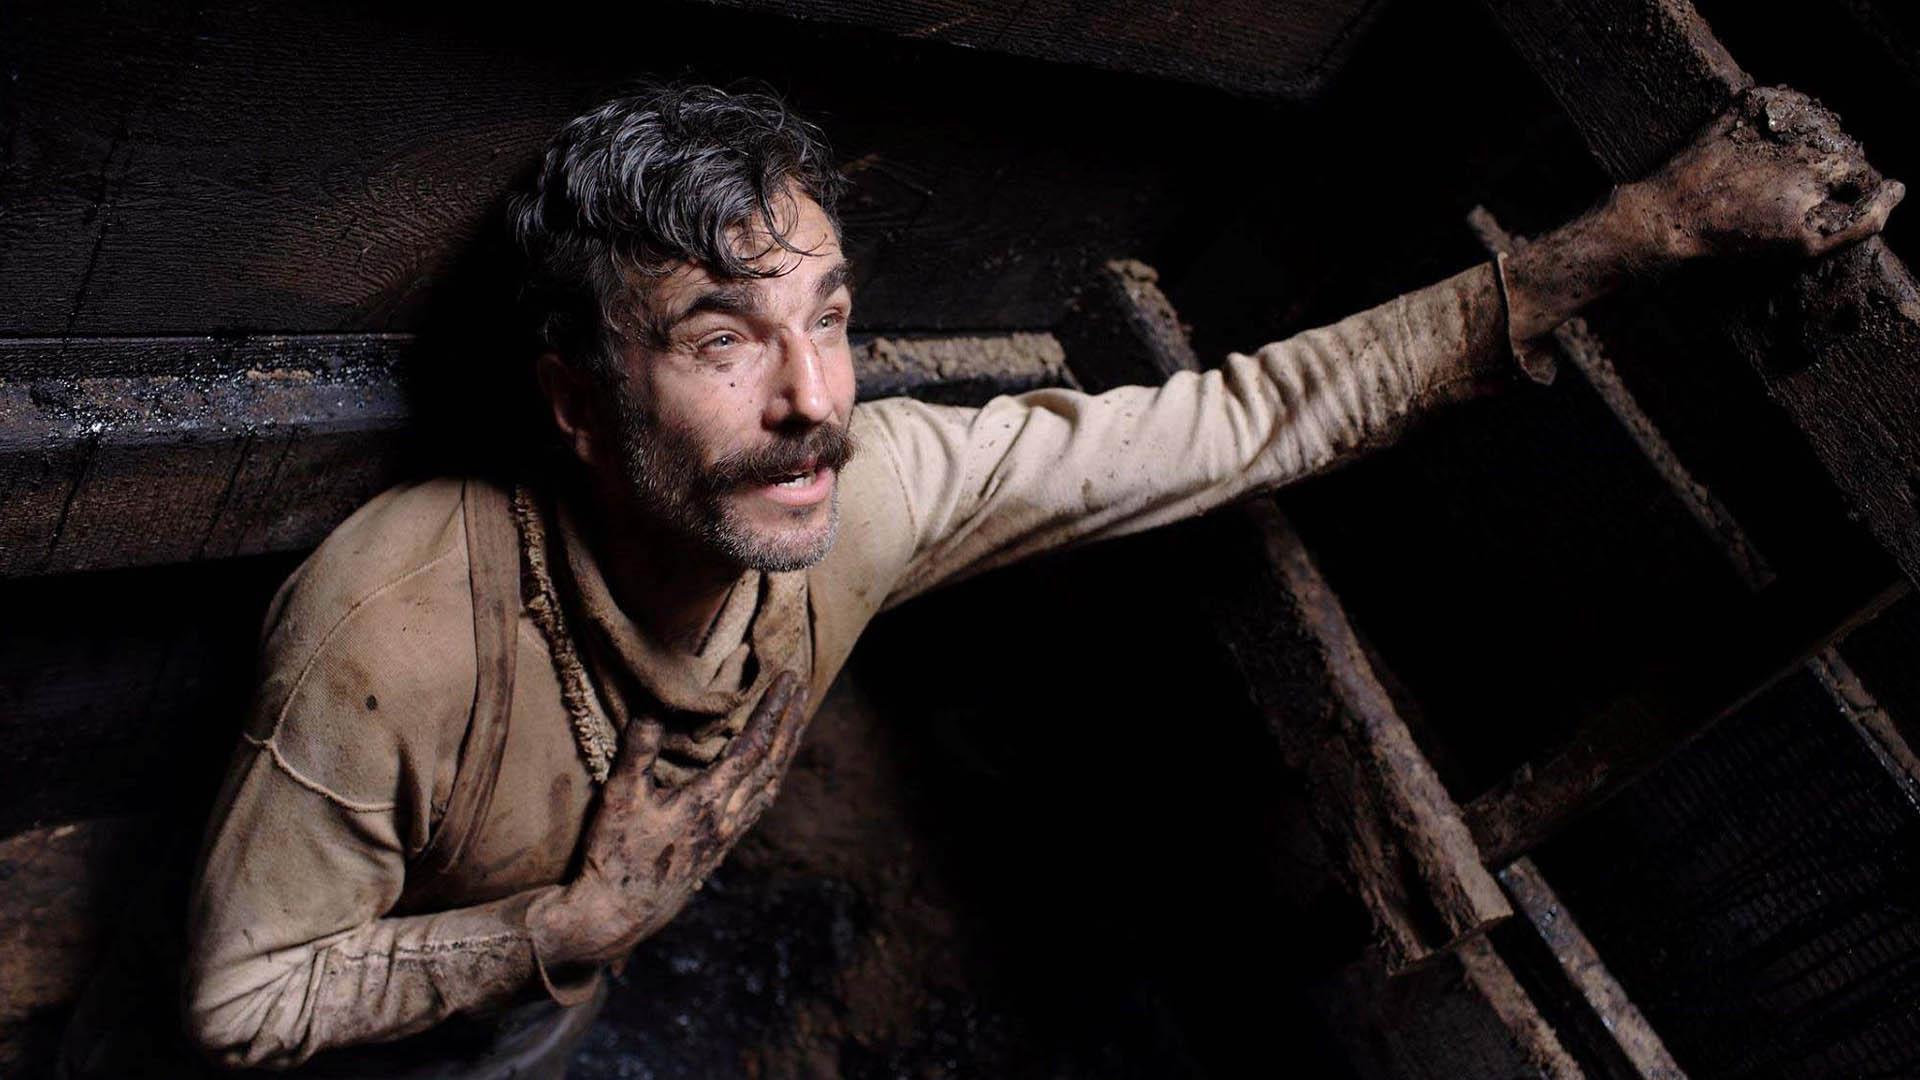 شخصیت دنیل پلین ویو با بازی دنیل دی لوئیس در چاه استخراج نفت در فیلم there will be blood